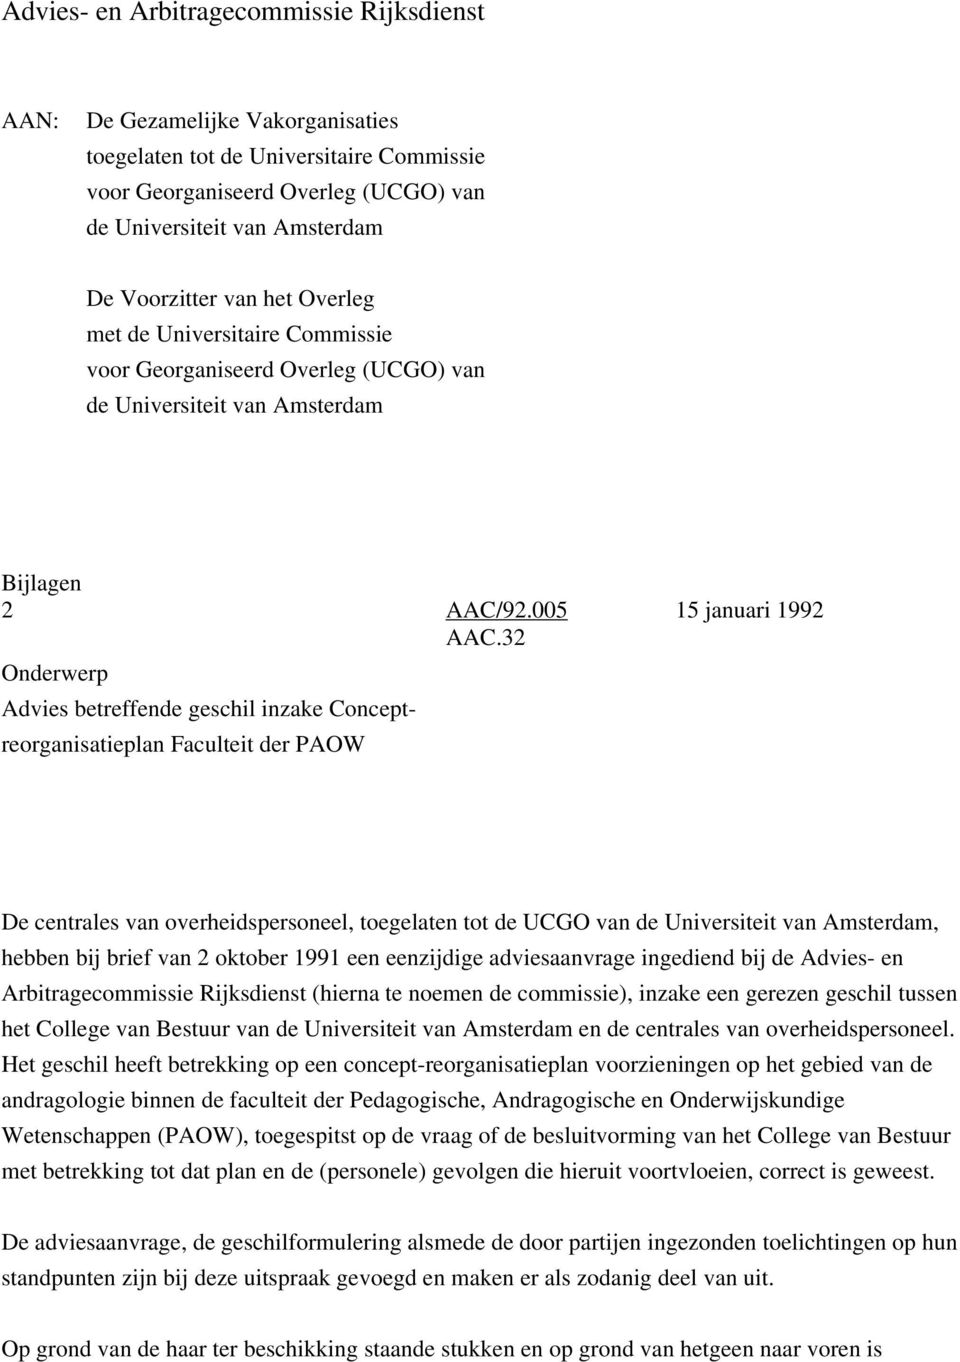 32 Onderwerp Advies betreffende geschil inzake Conceptreorganisatieplan Faculteit der PAOW De centrales van overheidspersoneel, toegelaten tot de UCGO van de Universiteit van Amsterdam, hebben bij